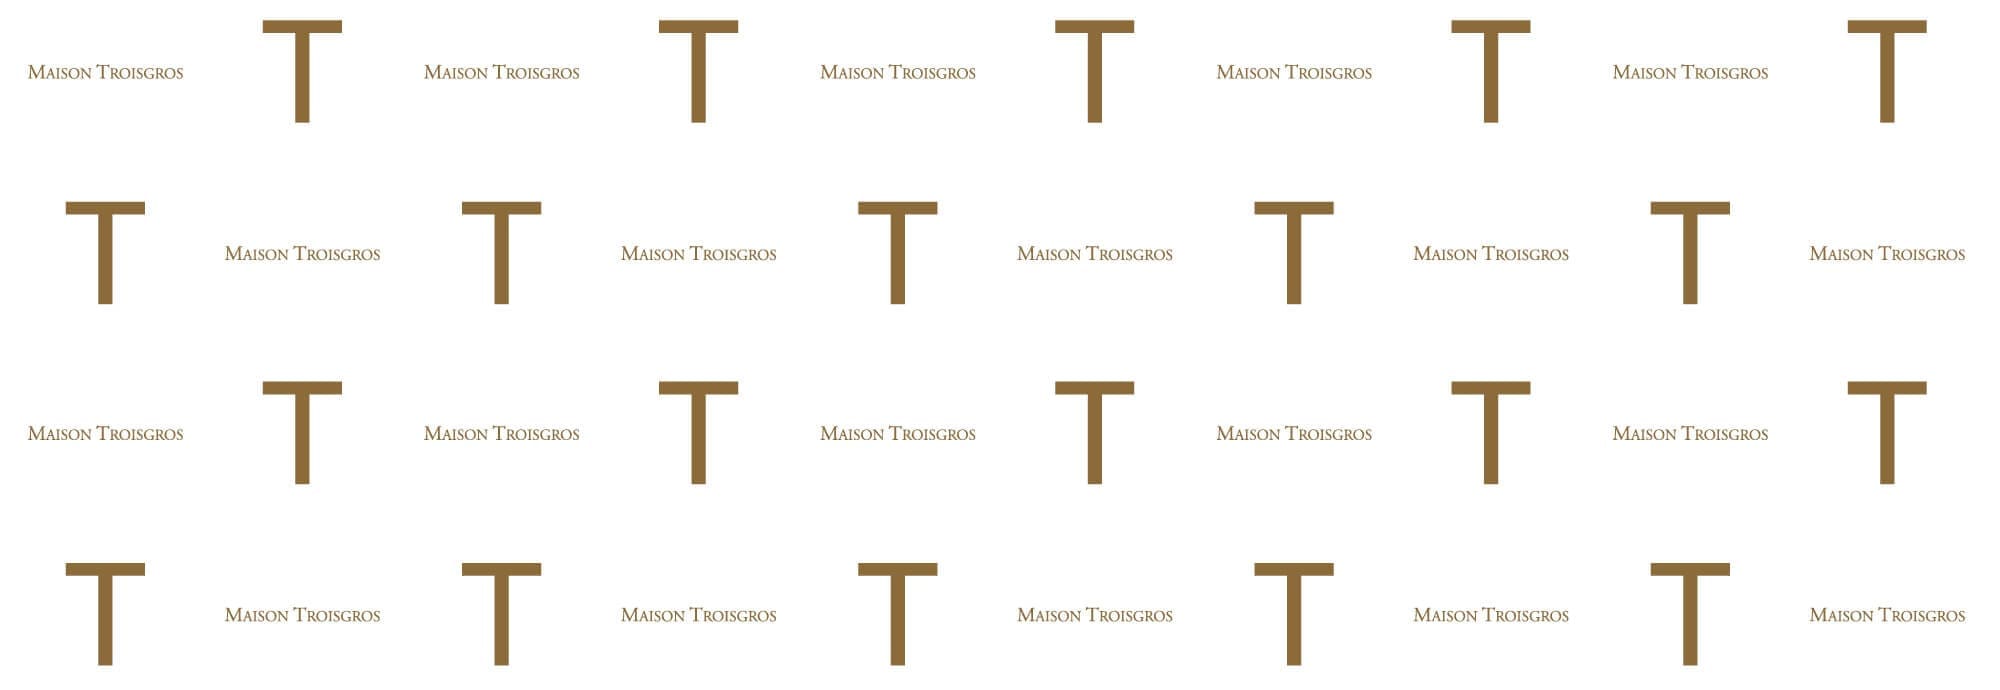 Motif de l'identité visuelle du restaurant étoilé Troisgros, design IchetKar